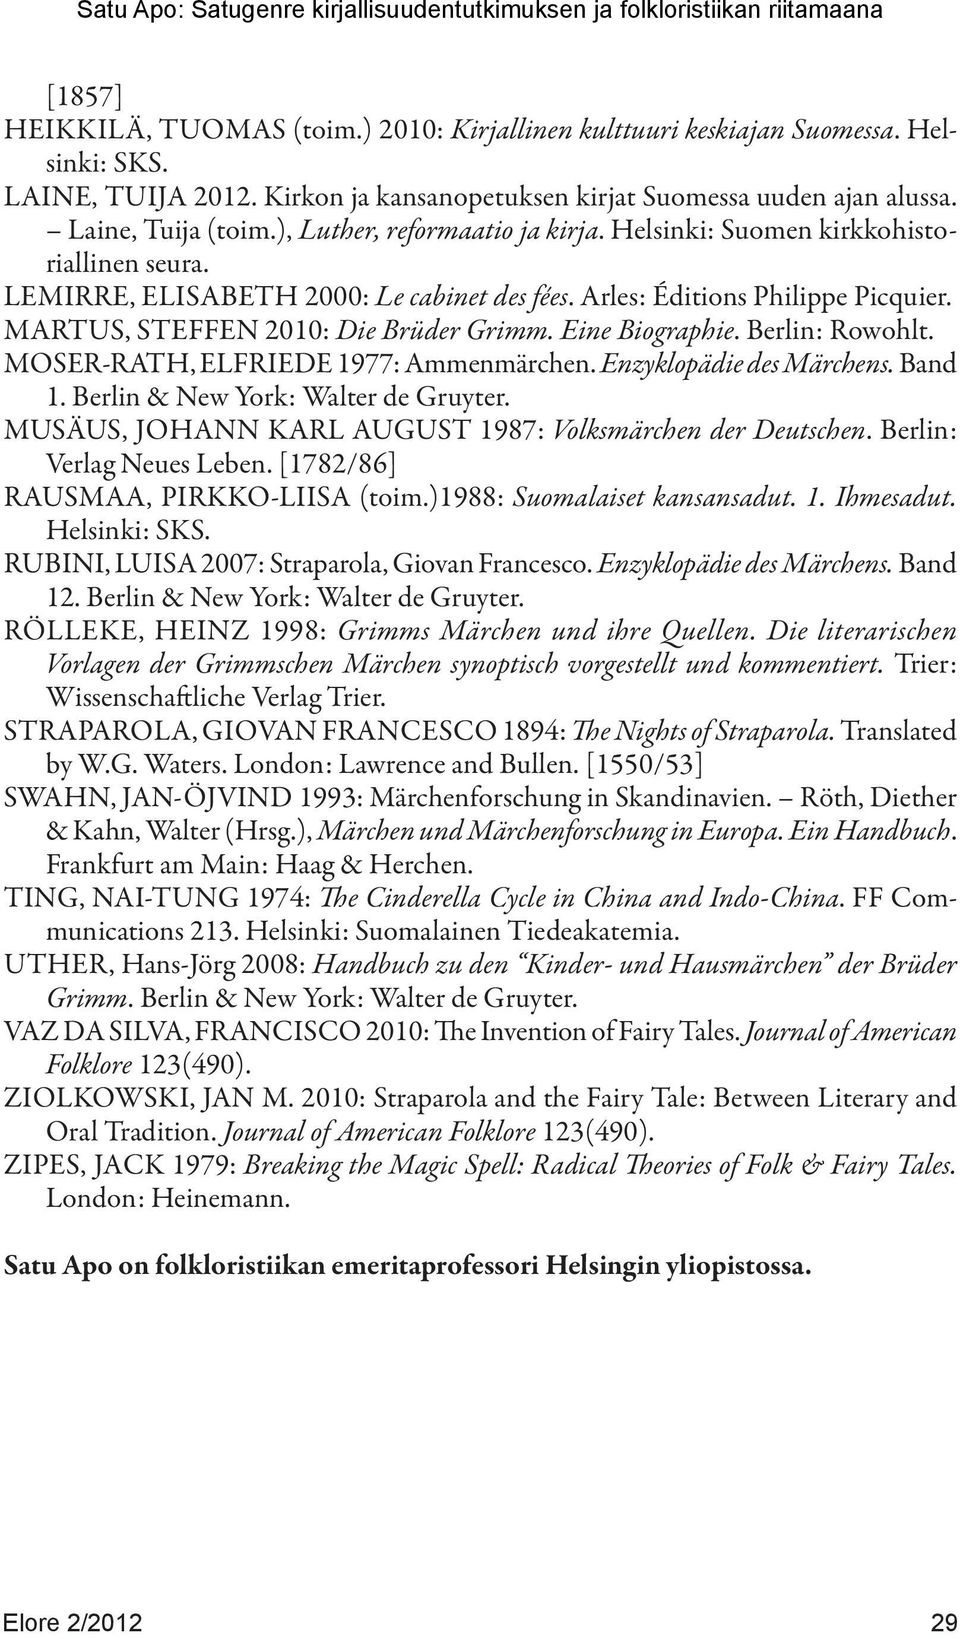 Eine Biographie. Berlin: Rowohlt. MOSER-RATH, ELFRIEDE 1977: Ammenmärchen. Enzyklopädie des Märchens. Band 1. Berlin & New York: Walter de Gruyter.